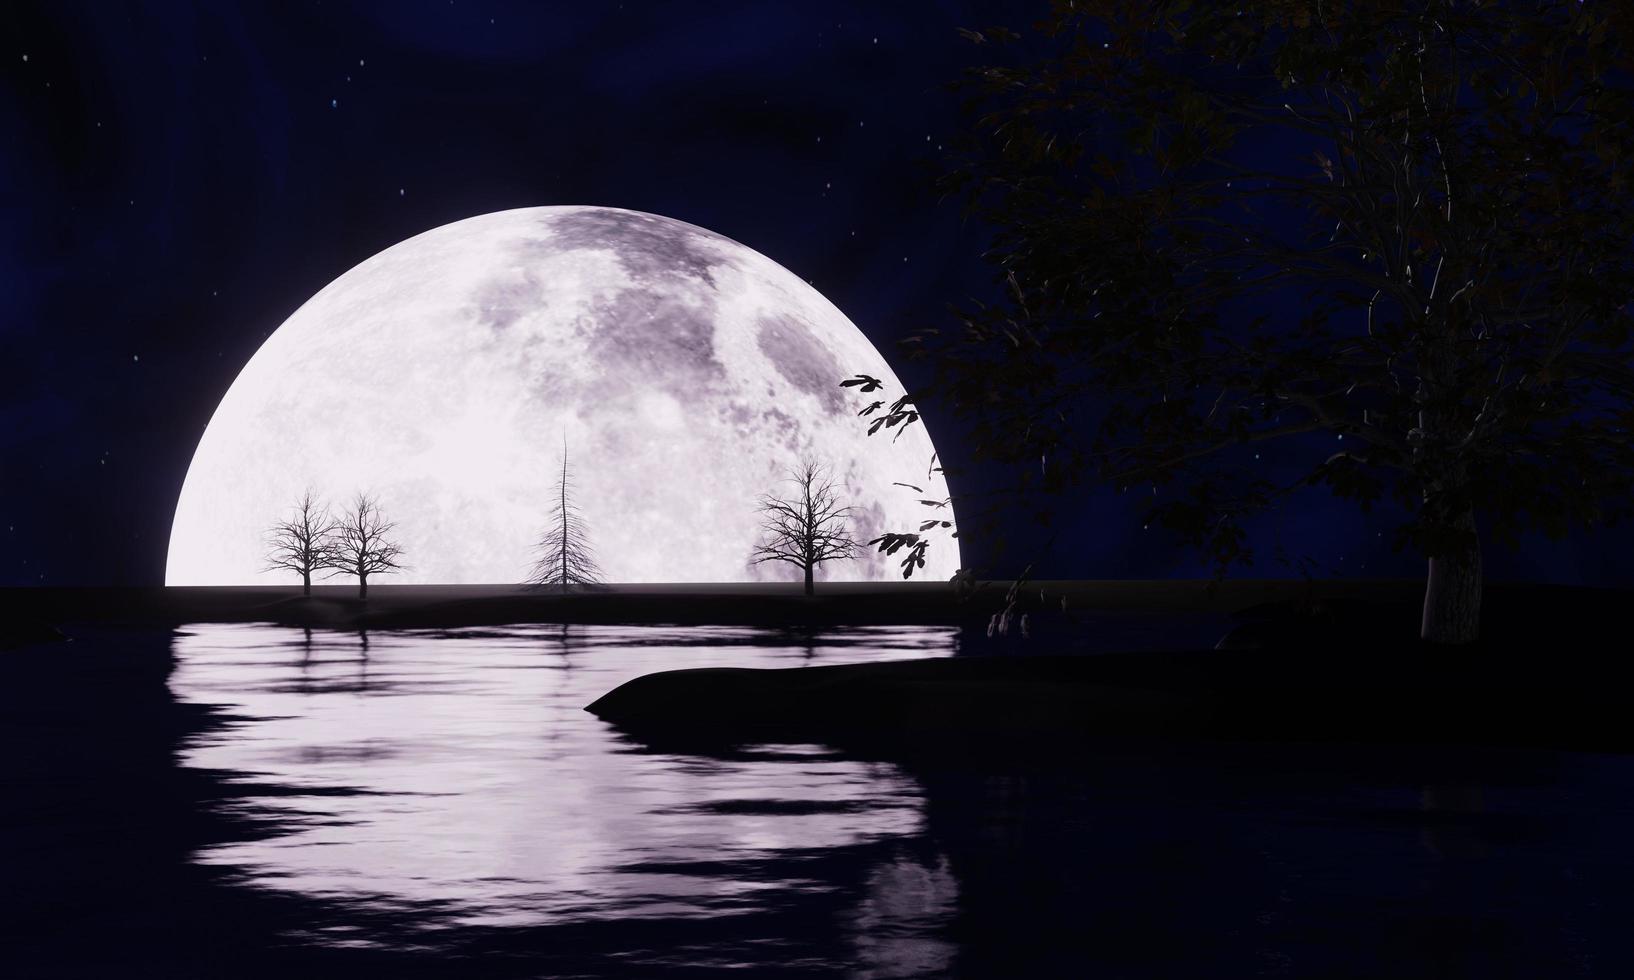 volle maan nacht, maar slechts de helft van de maan kan worden gezien. de reflectie van de maan op de rivier 's nachts. het boomsilhouet heeft de belangrijkste scène van de maan. heldere hemel, sterrenhemel.3D-rendering foto